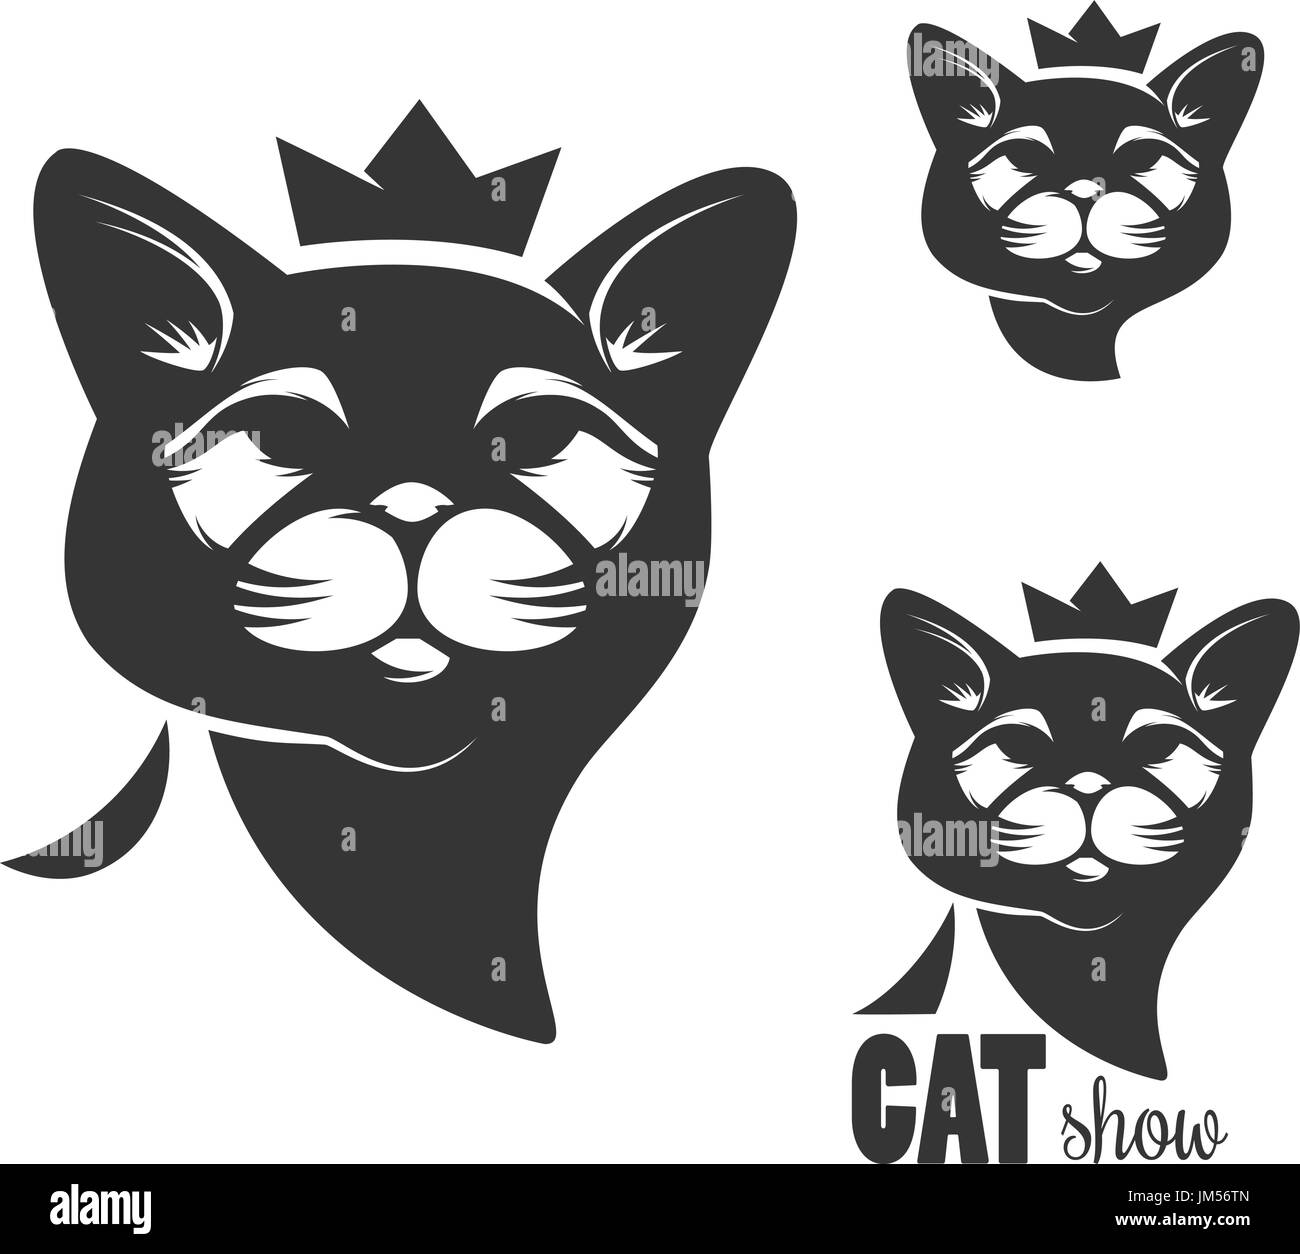 Katze Kopf Symbol mit Krone isoliert auf weißem Hintergrund. Design-Elemente für Label, Emblem, Logo, Zeichen. Vektor-illustration Stock Vektor